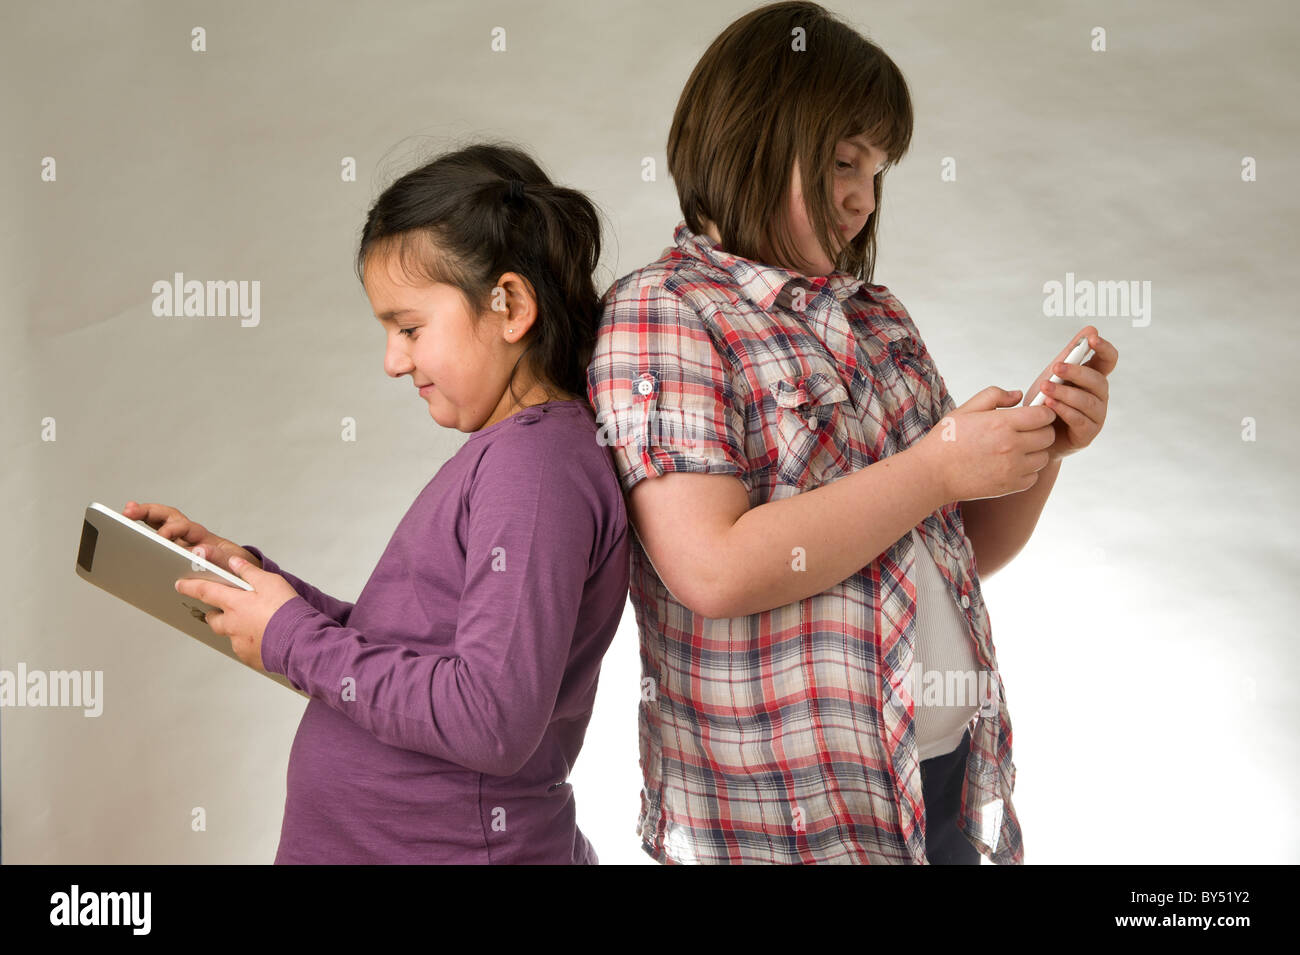 Deux jeunes filles à jouer à des jeux électroniques sur un écran tactile Banque D'Images